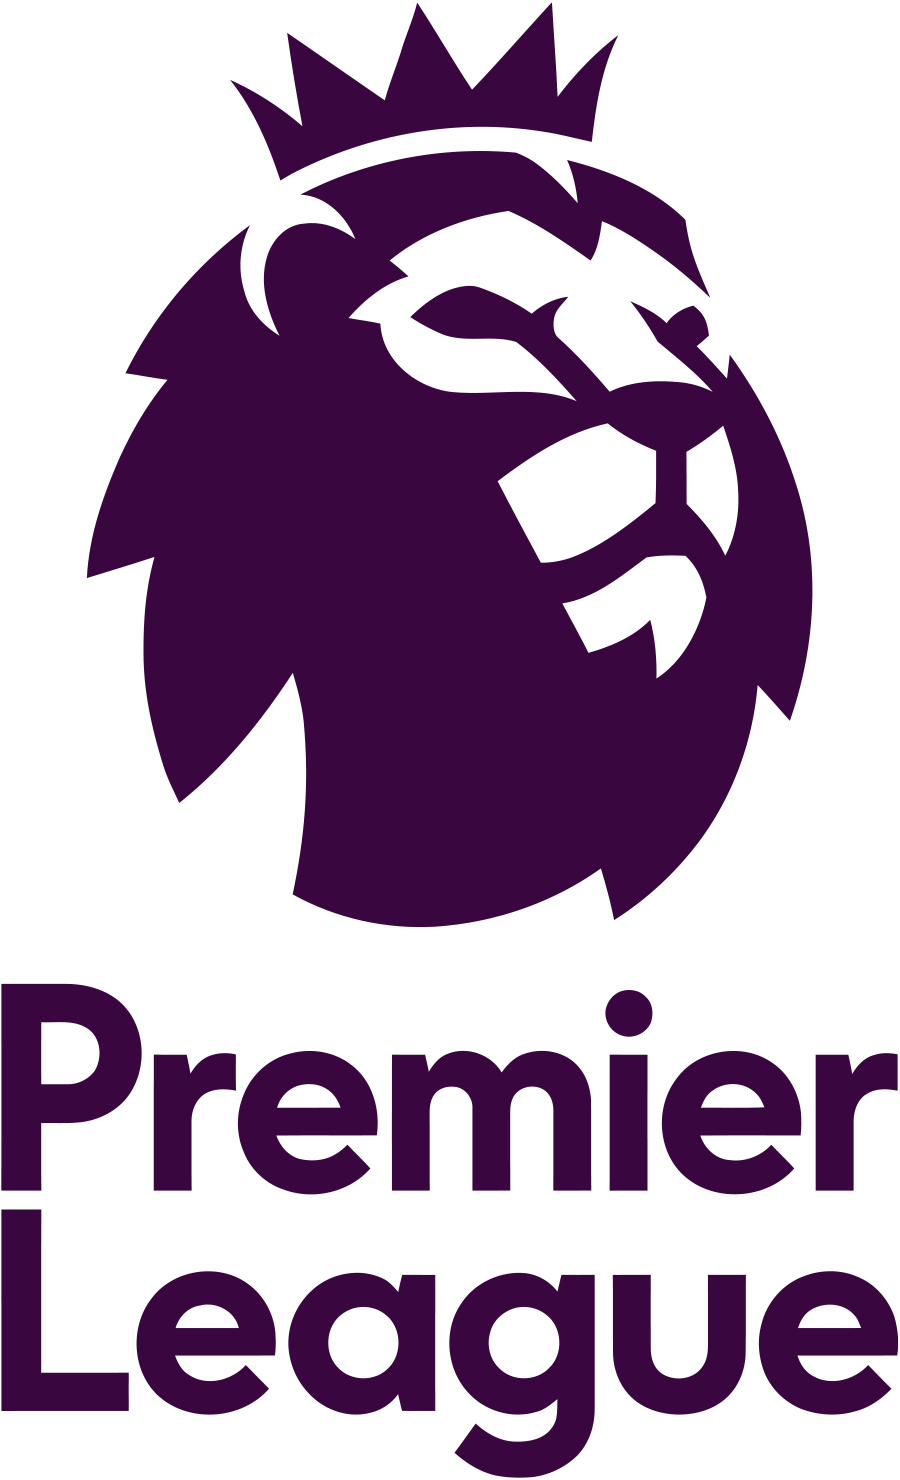 Premier League Logo – Fifplay - Premier League, Transparent background PNG HD thumbnail